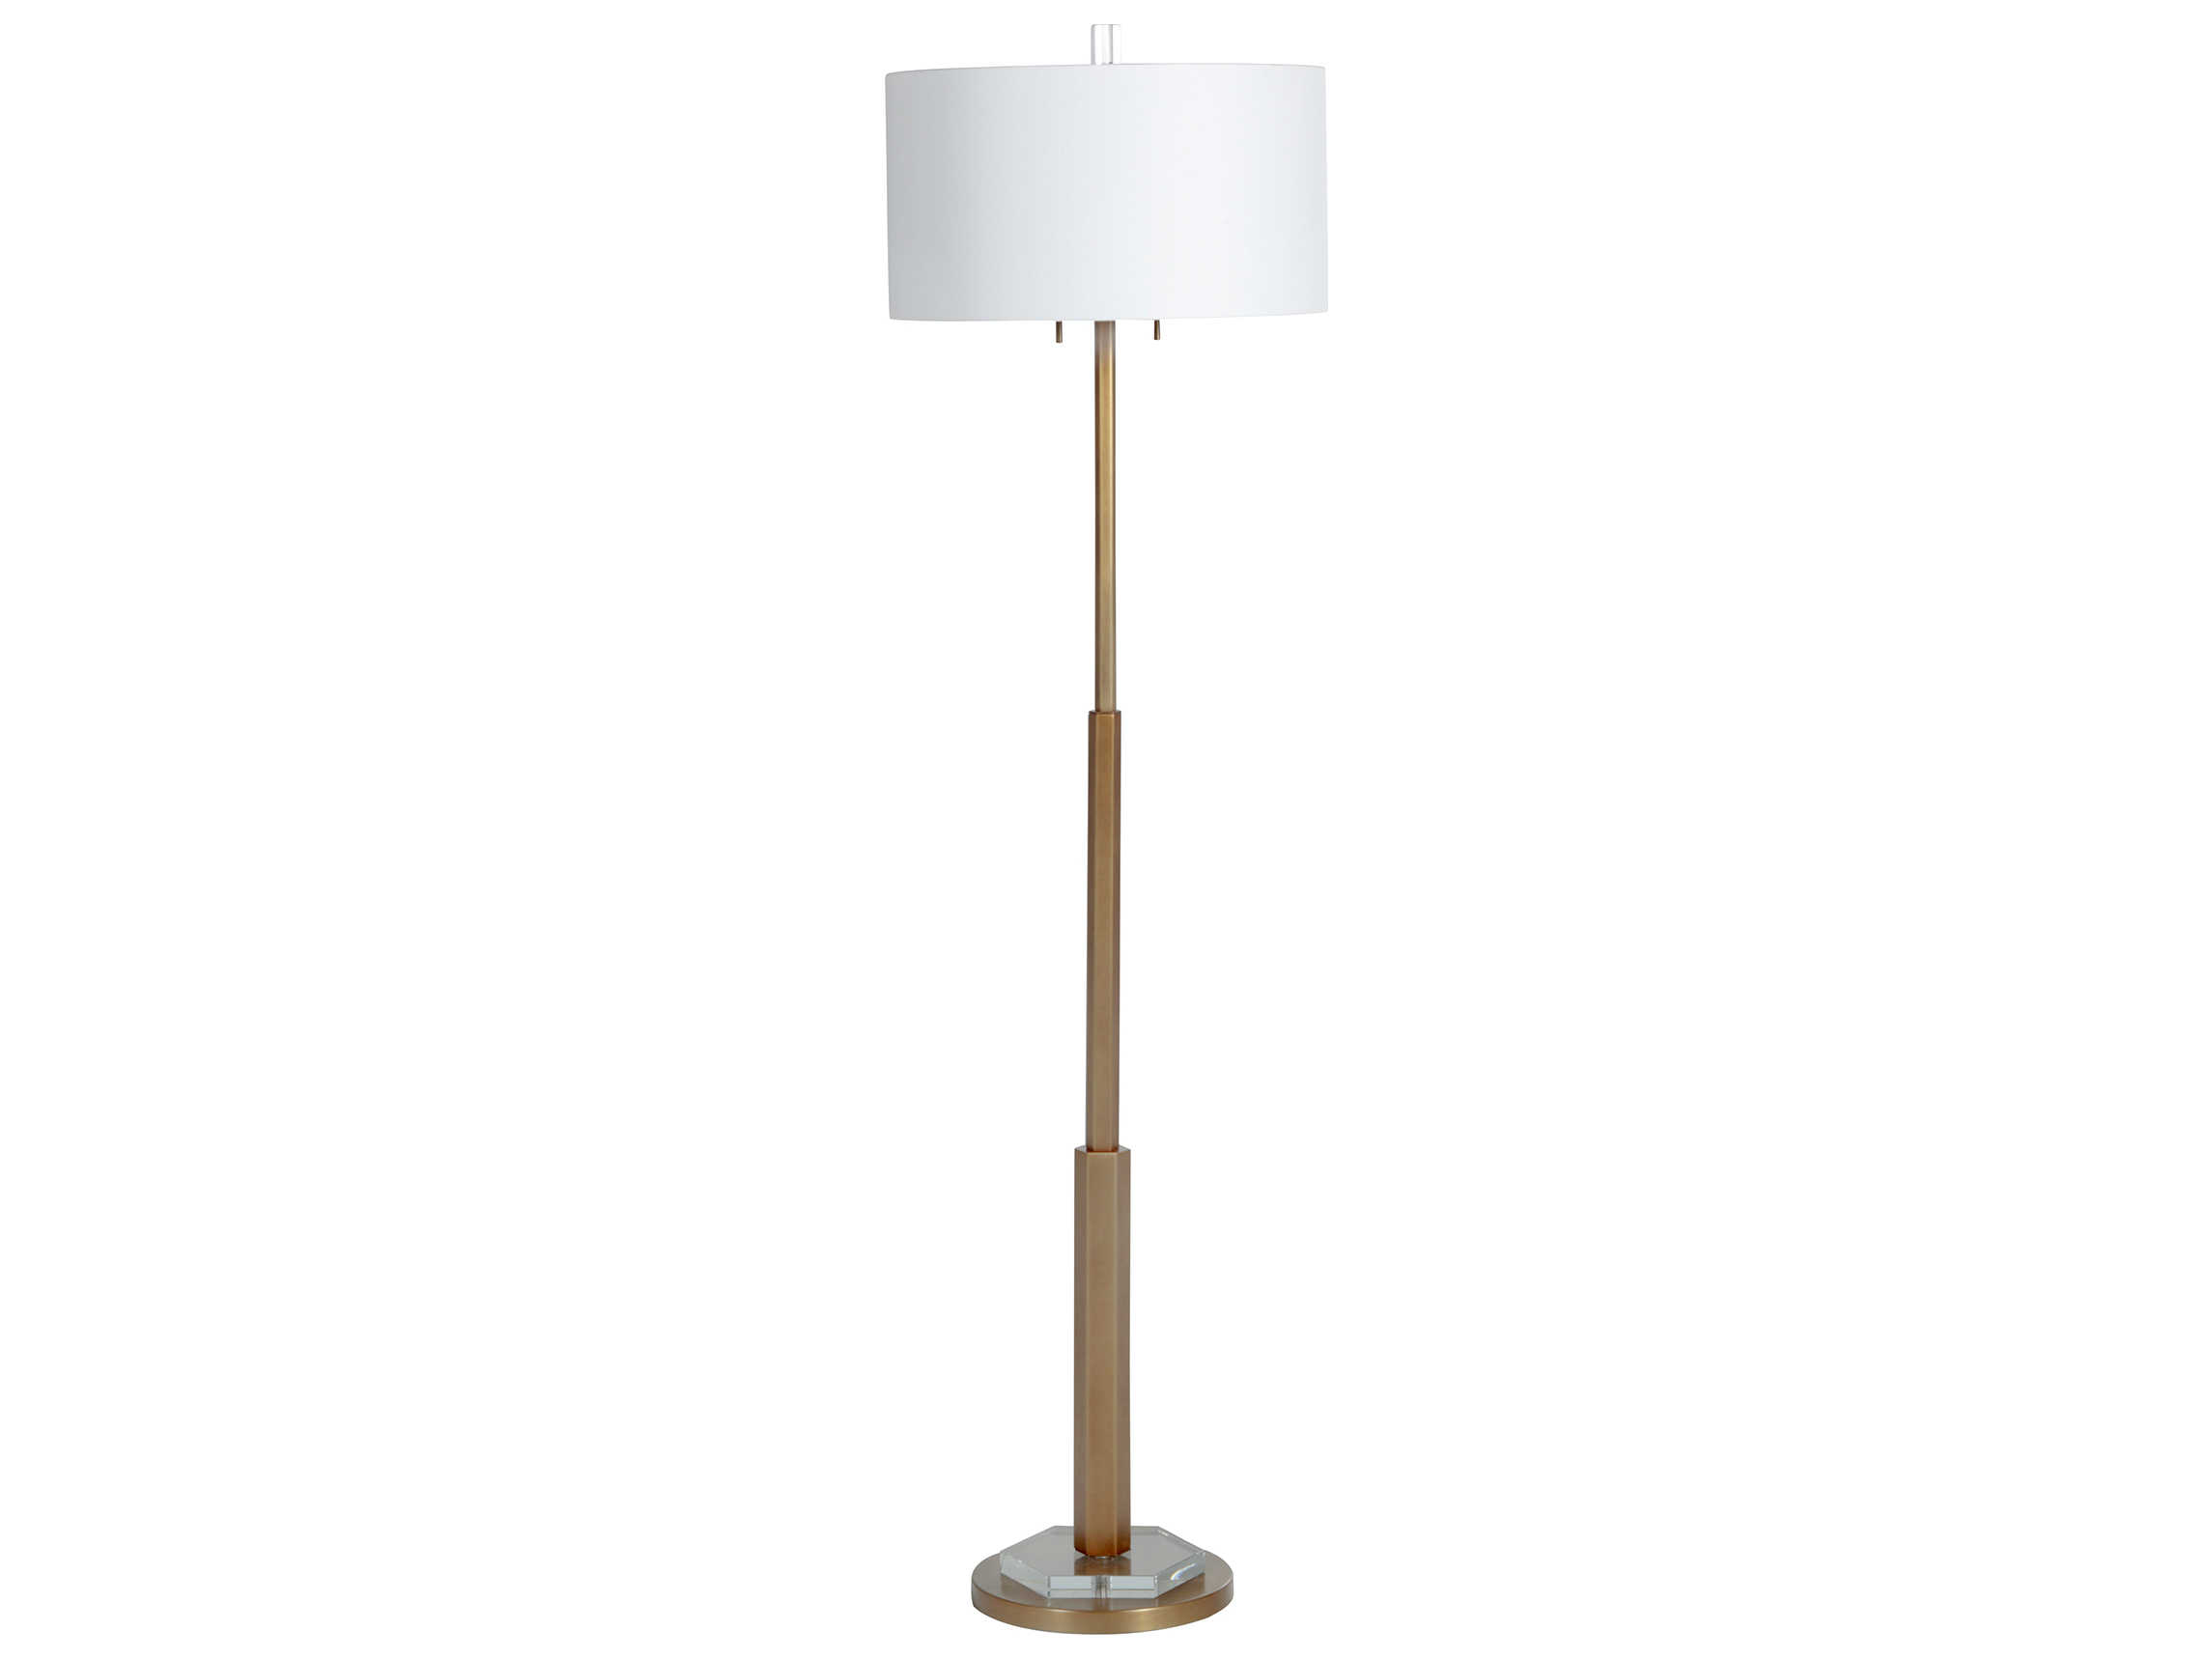 2 light floor lamp